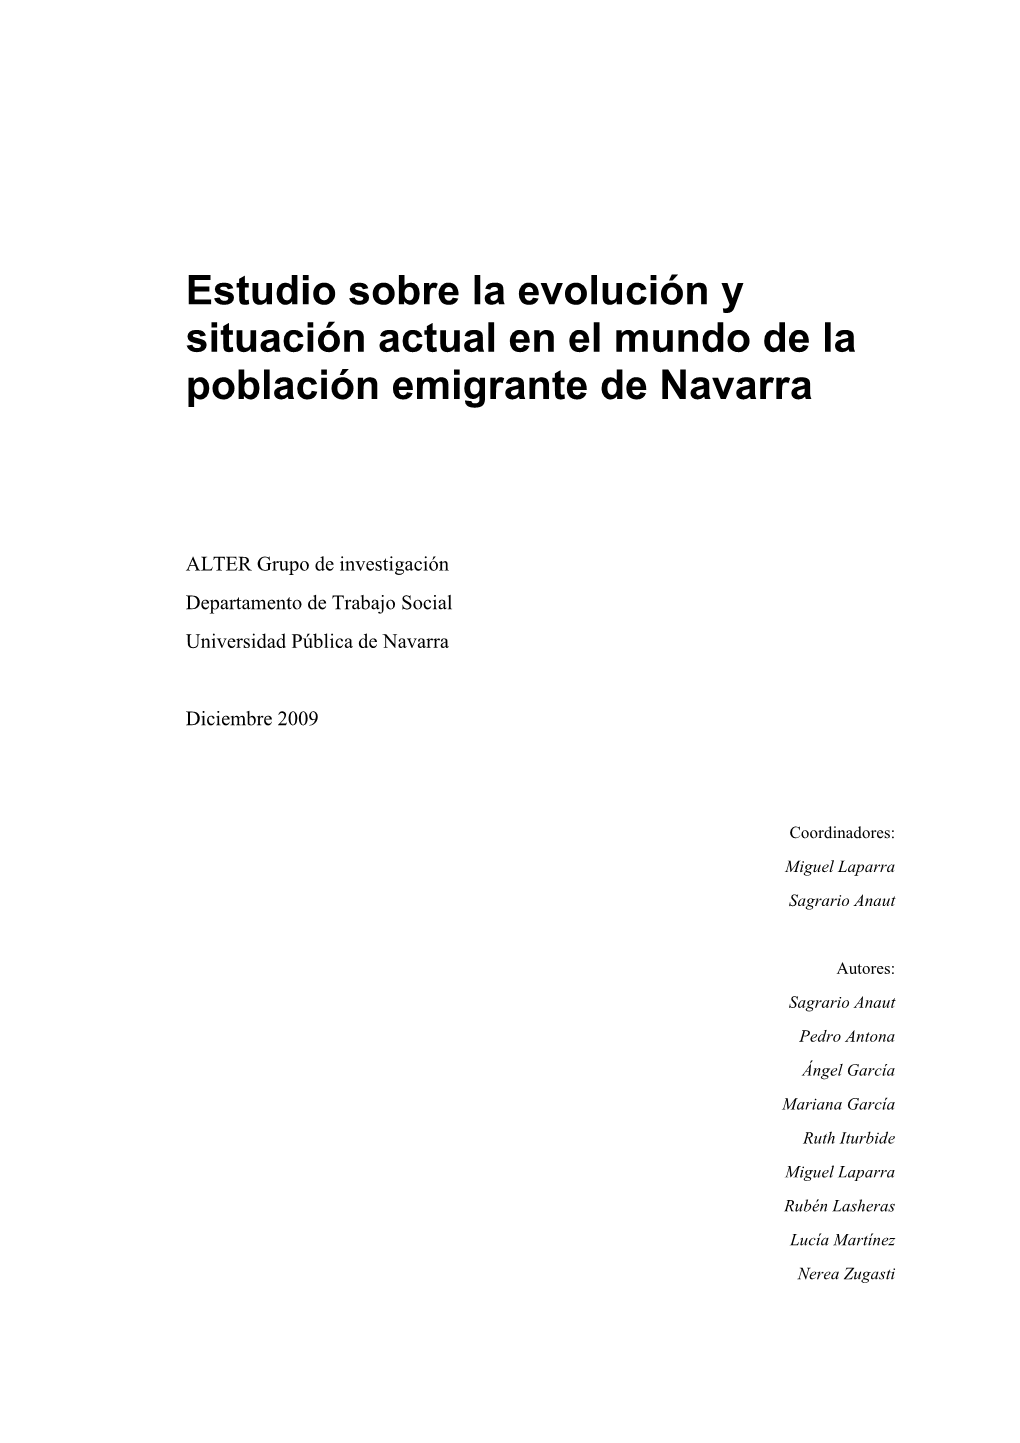 Estudio Sobre La Población Emigrante De Navarra